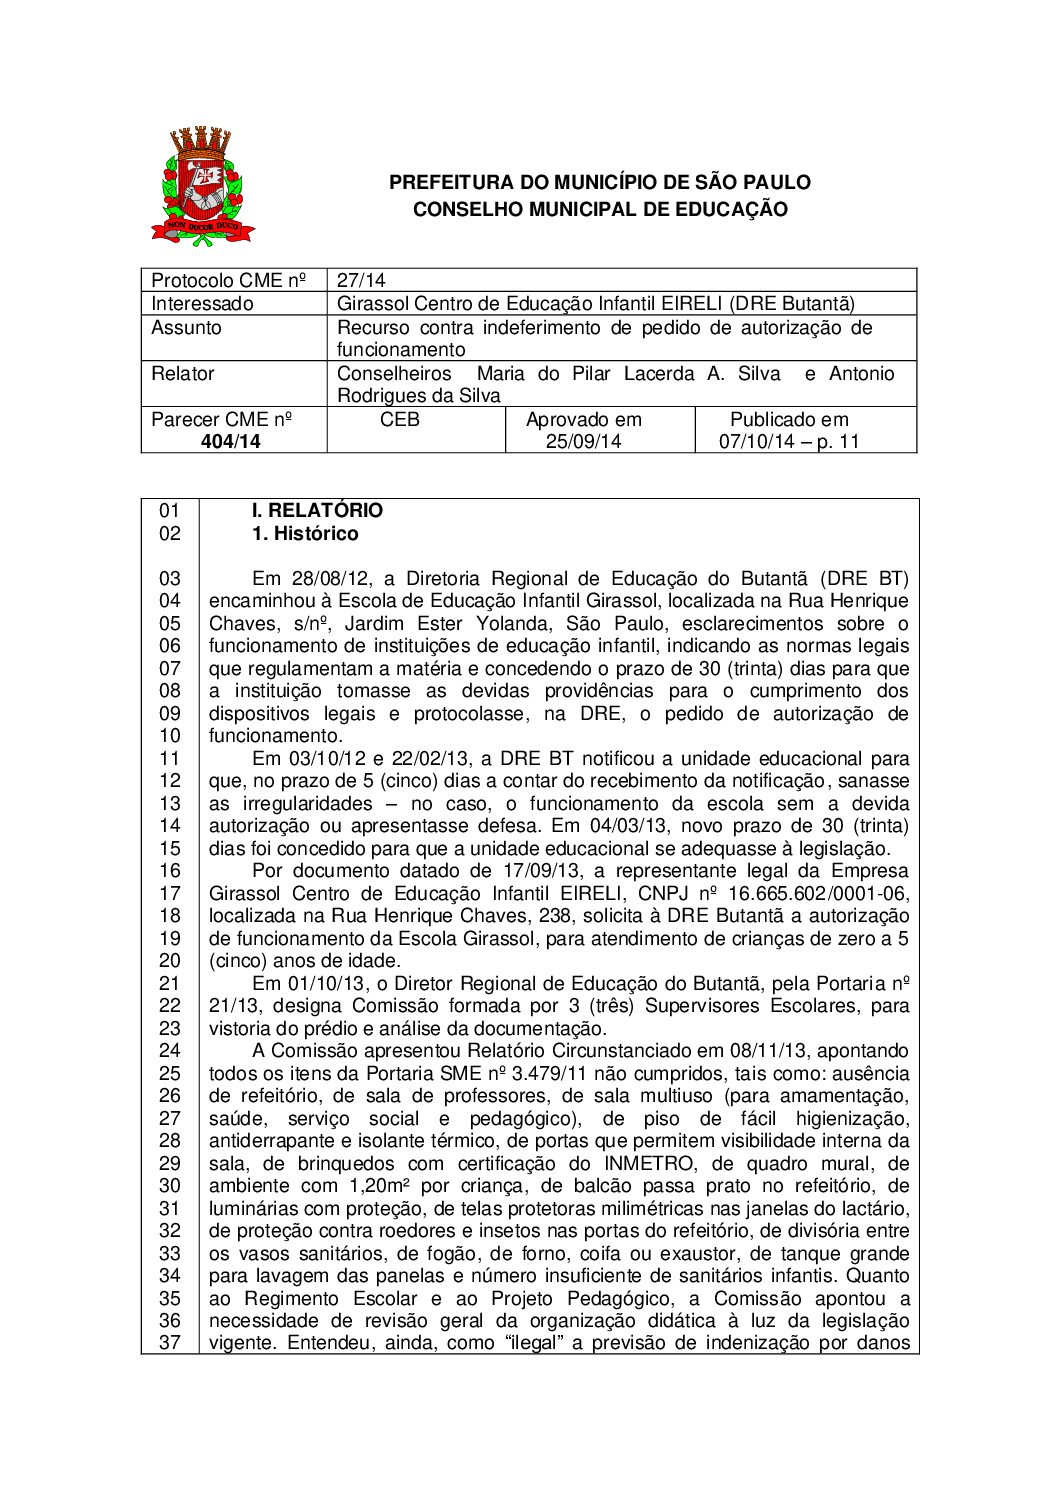 Parecer CME nº 404/2014 - Girassol Centro de Educação Infantil EIRELI (DRE Butantã) - Recurso contra indeferimento de pedido de autorização de funcionamento 